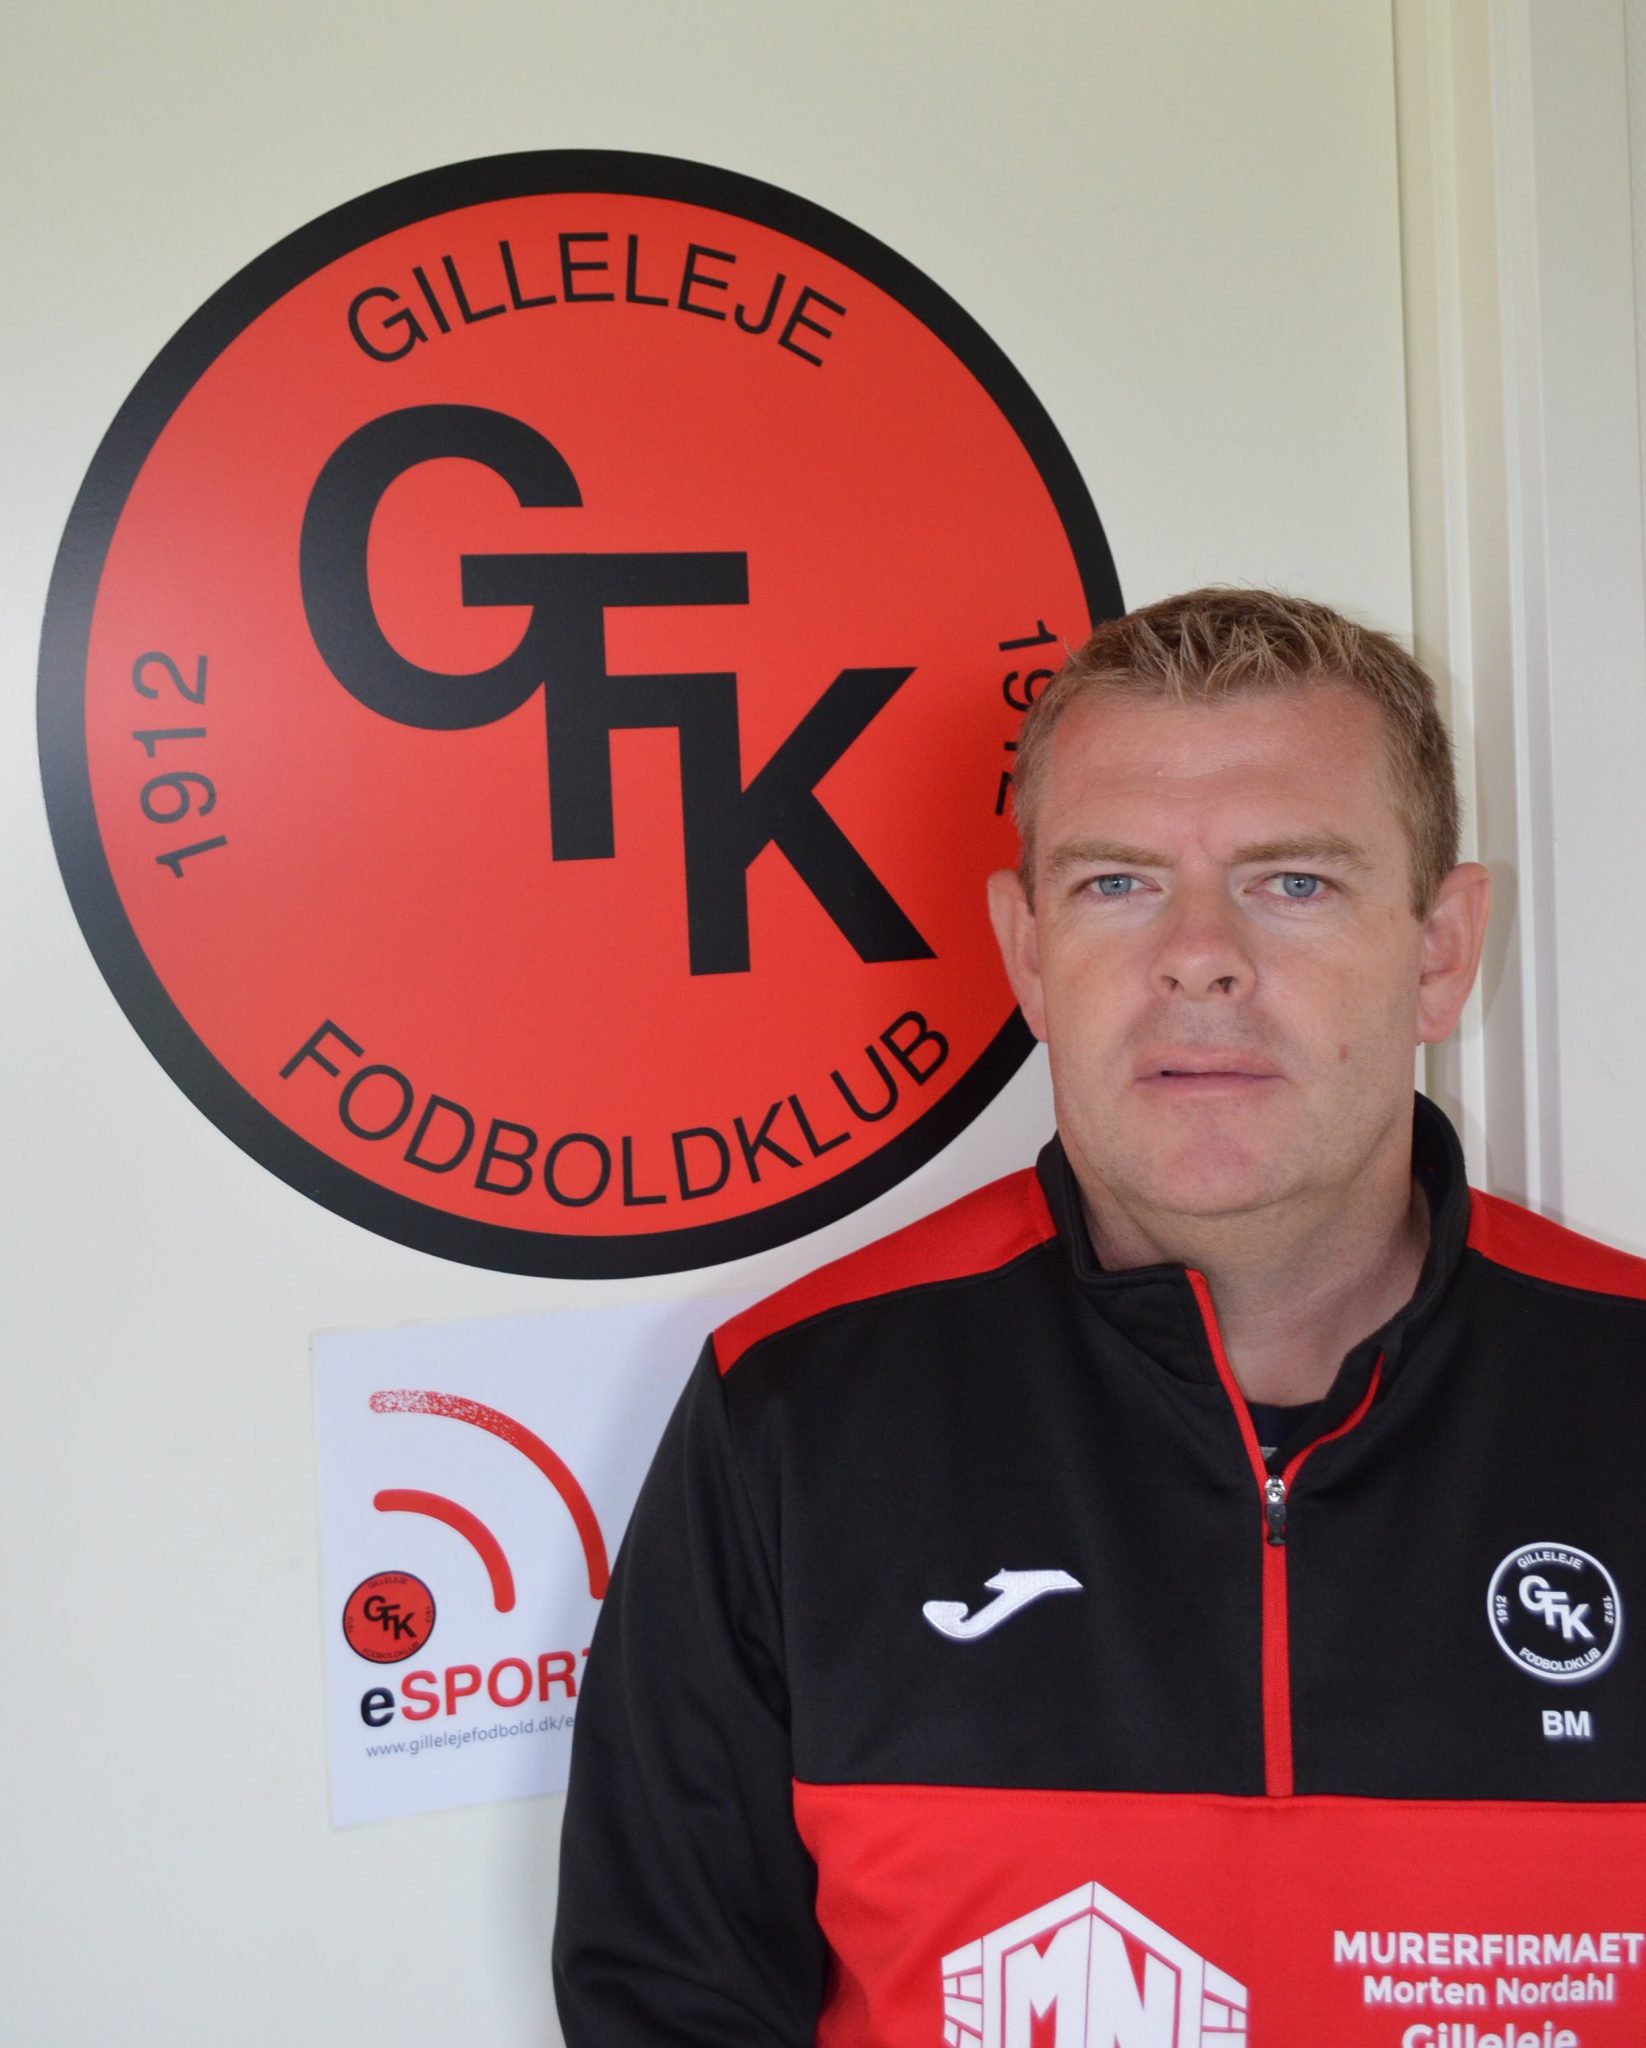 Brian Mogensen, leder af seniorafdelingen i Gilleleje Boldklub